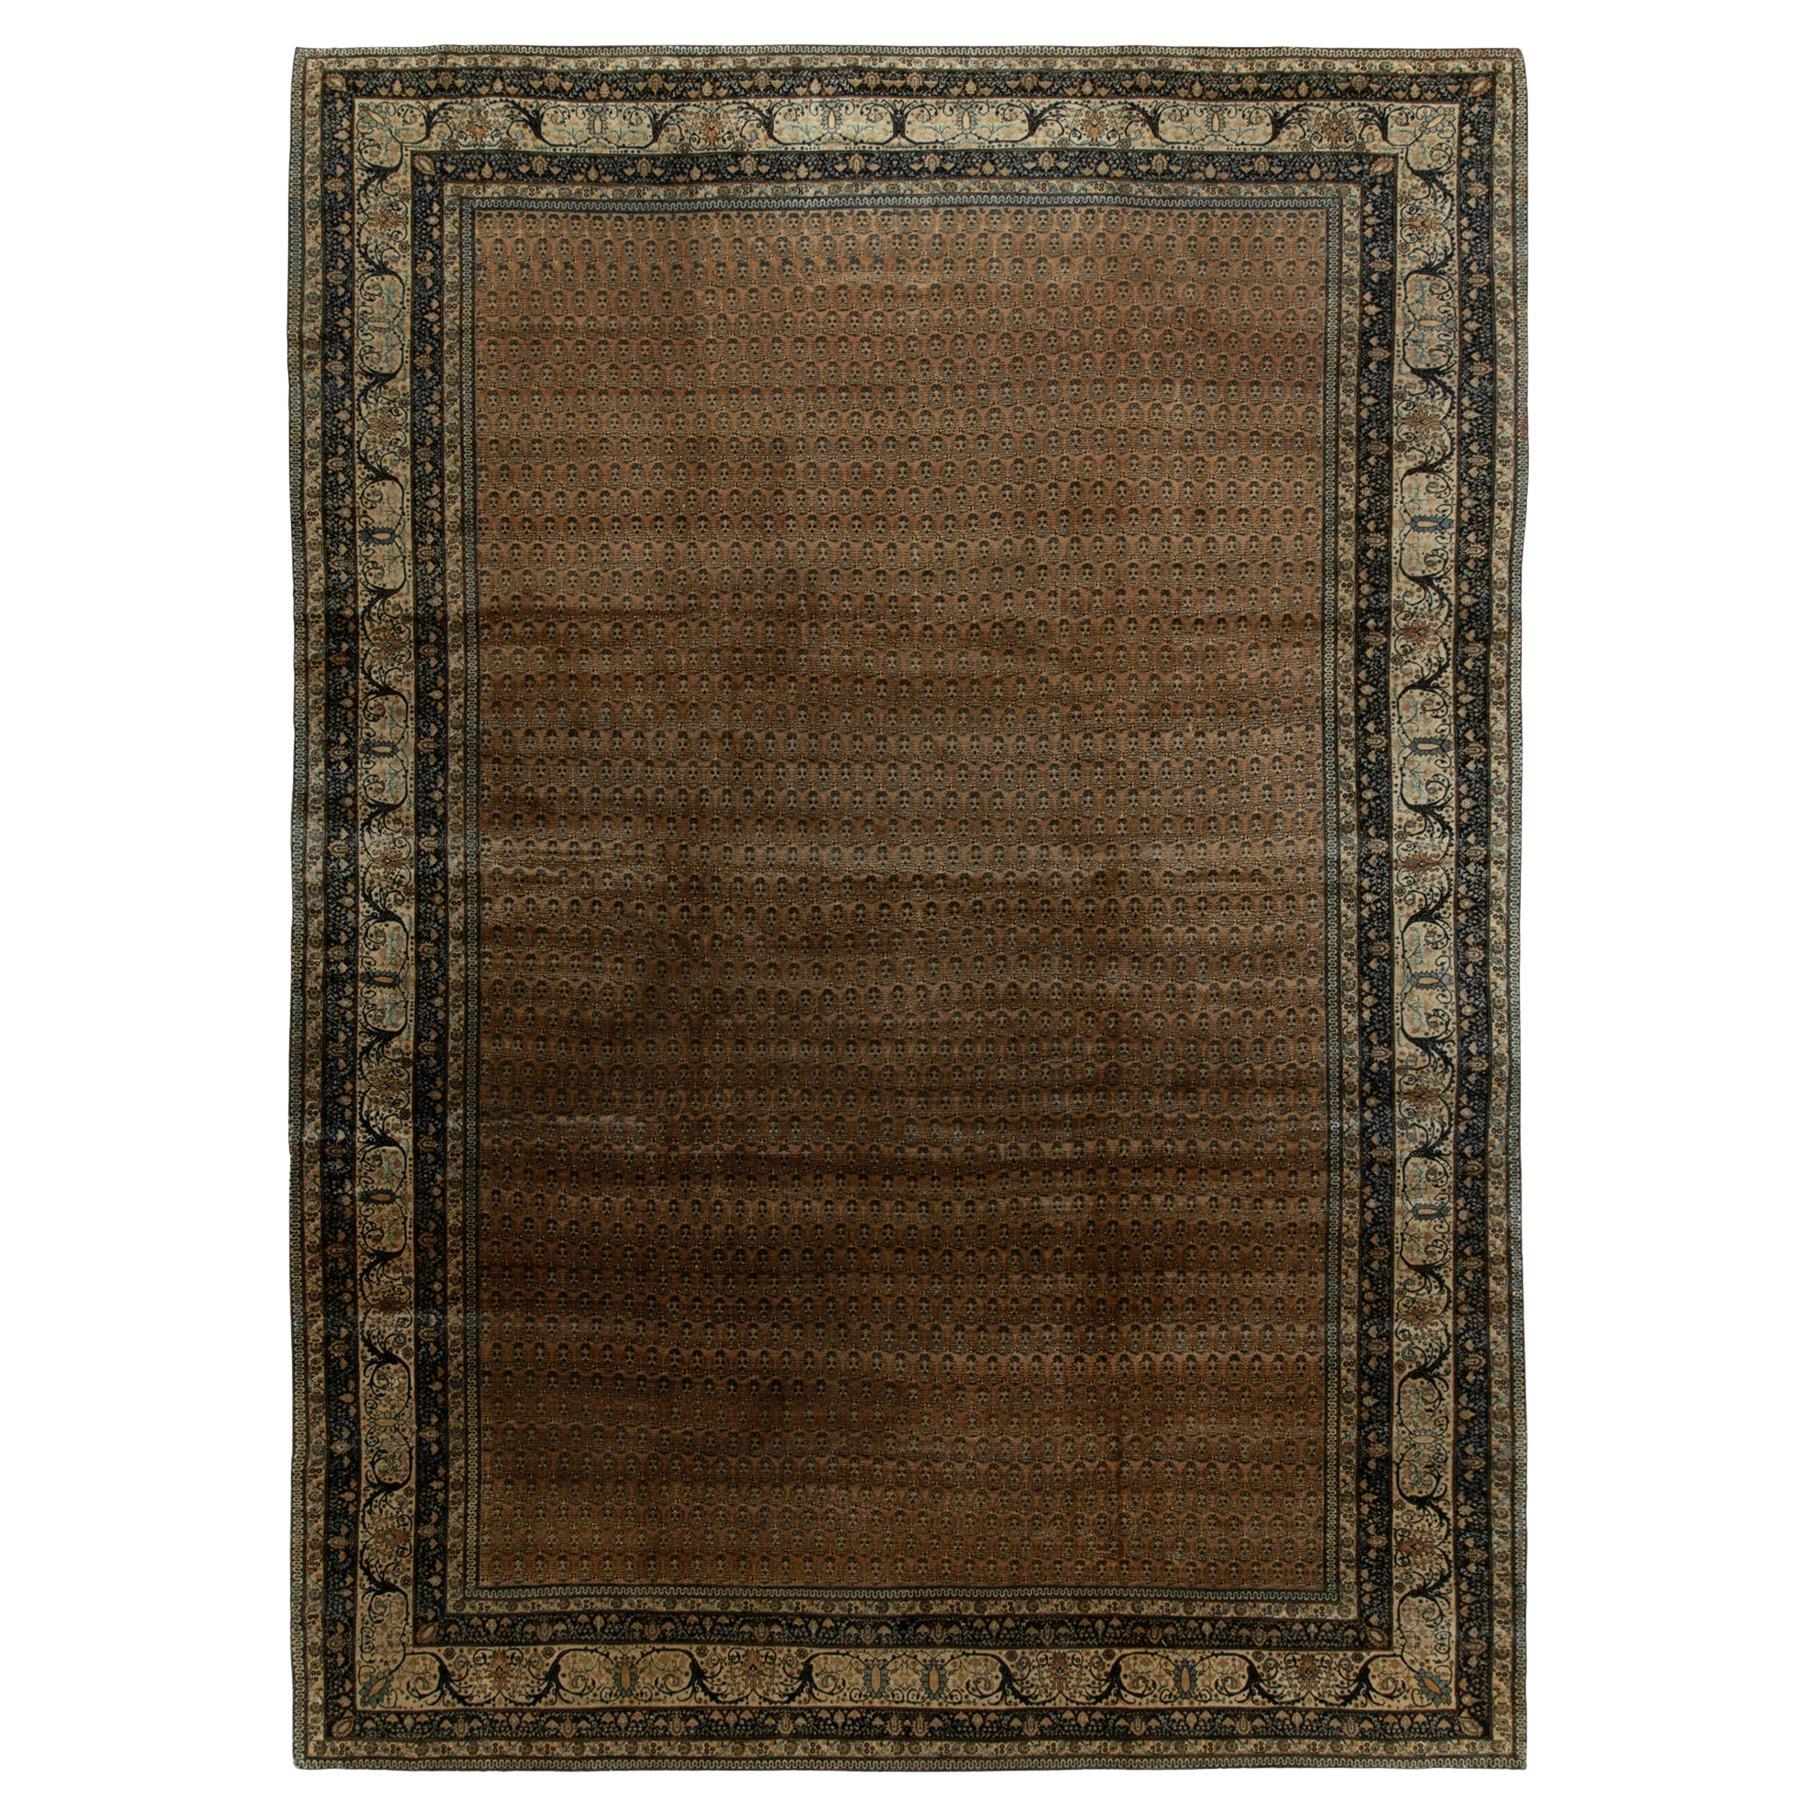 Antique Tabriz rug in Beige-Brown, Black & Blue Floral Border by Rug & Kilim For Sale